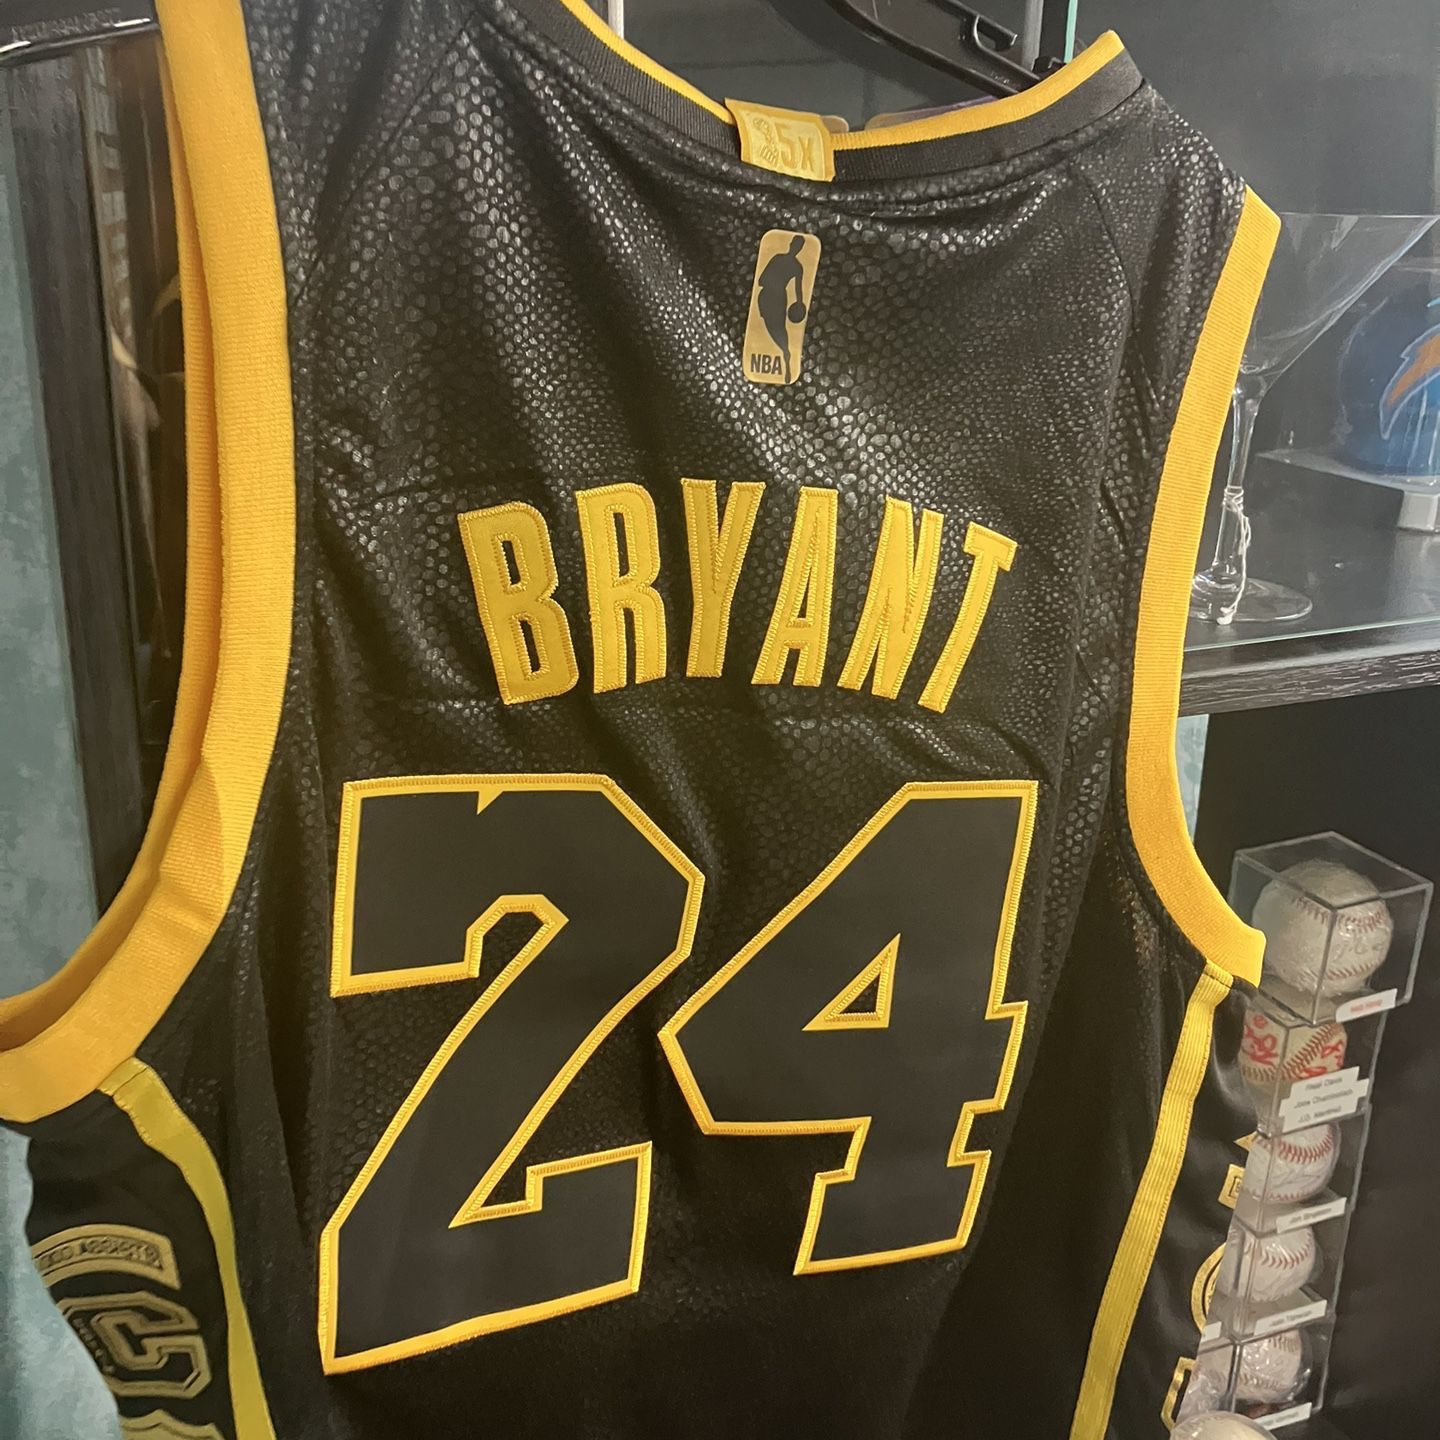 Kobe Bryant LA Lakers Nike Nba Golden Edition Basketball Jersey